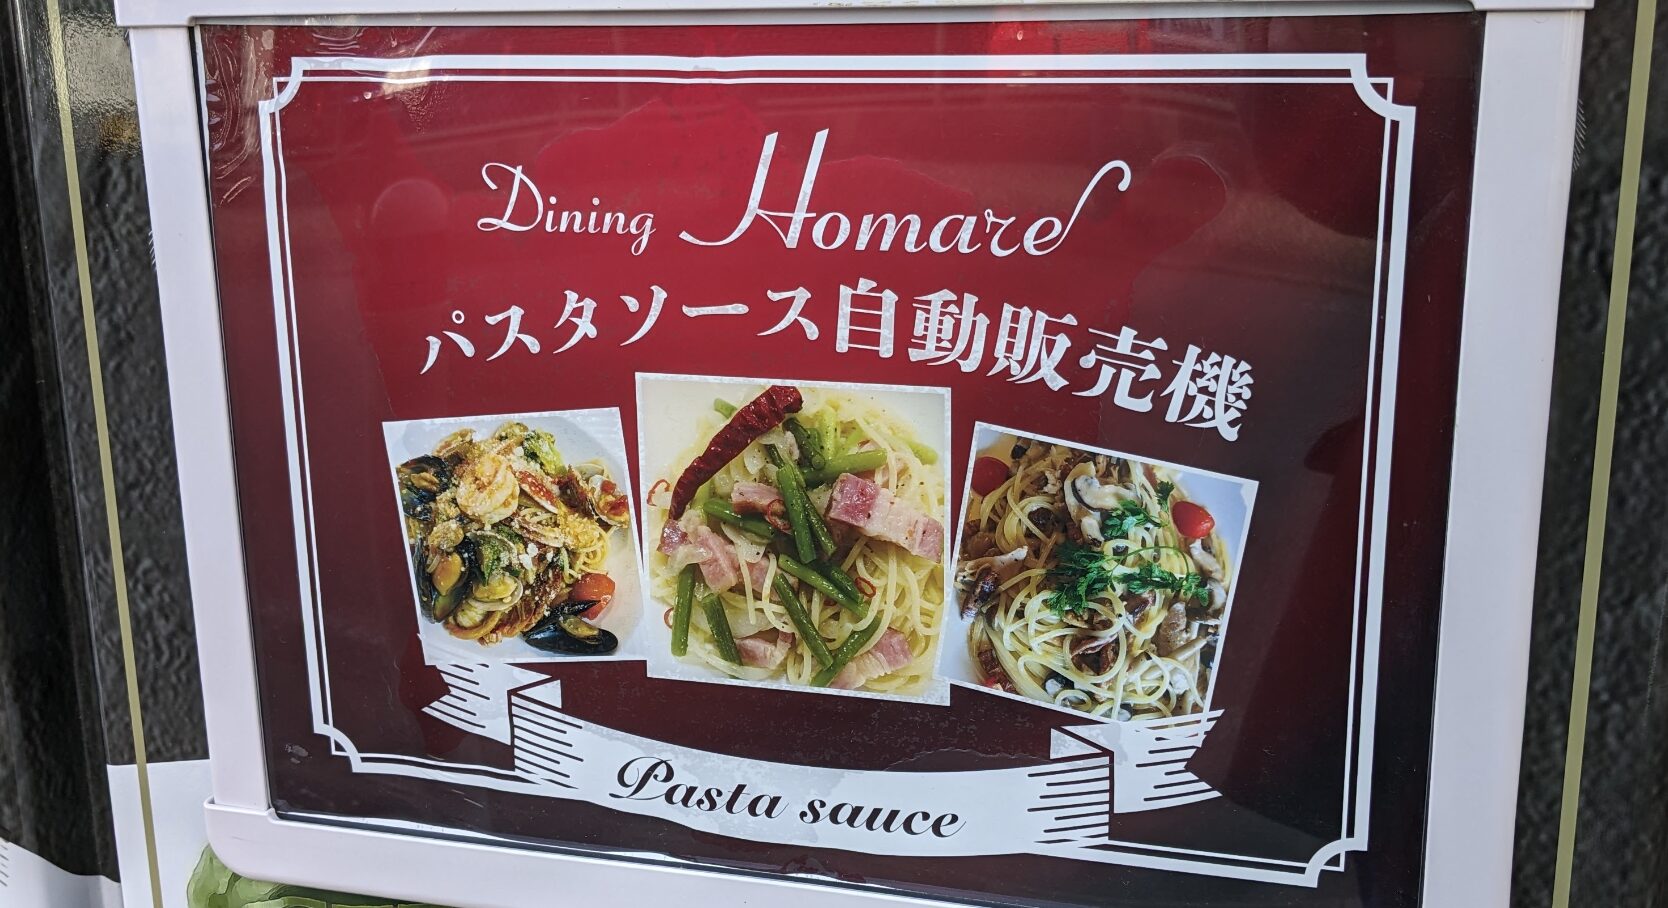 橋本「Dining Homare」さんのパスタソース自販機です。